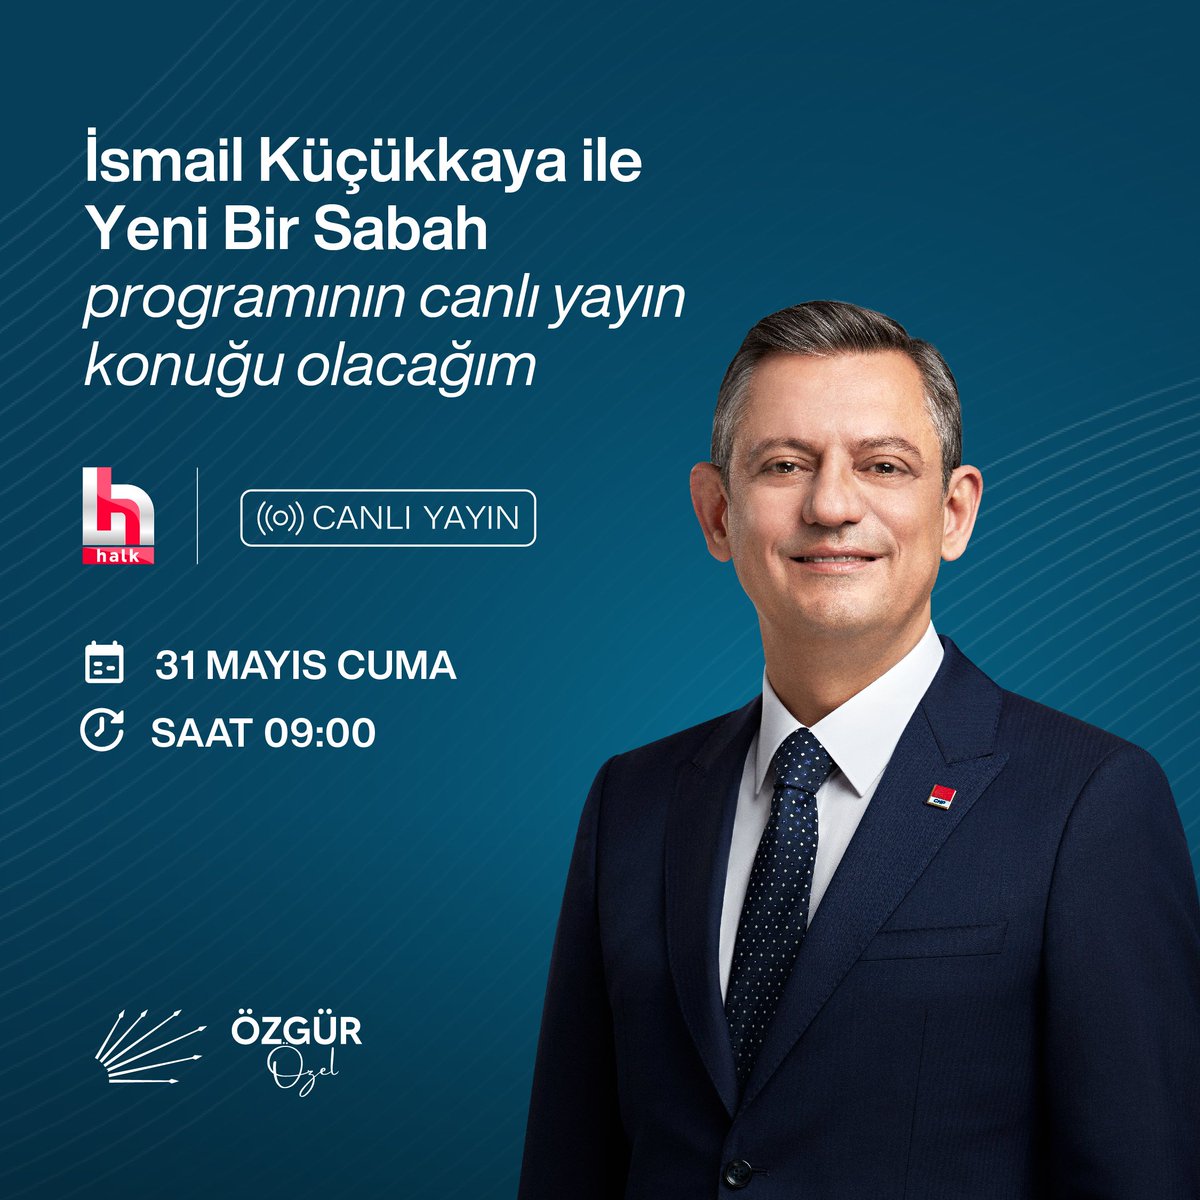 Yarın Halk TV'de İsmail Küçükkaya ile Yeni Bir Sabah programının canlı yayın konuğu olacağım. 🗓️ 31 Mayıs Cuma ⏰ 09.00